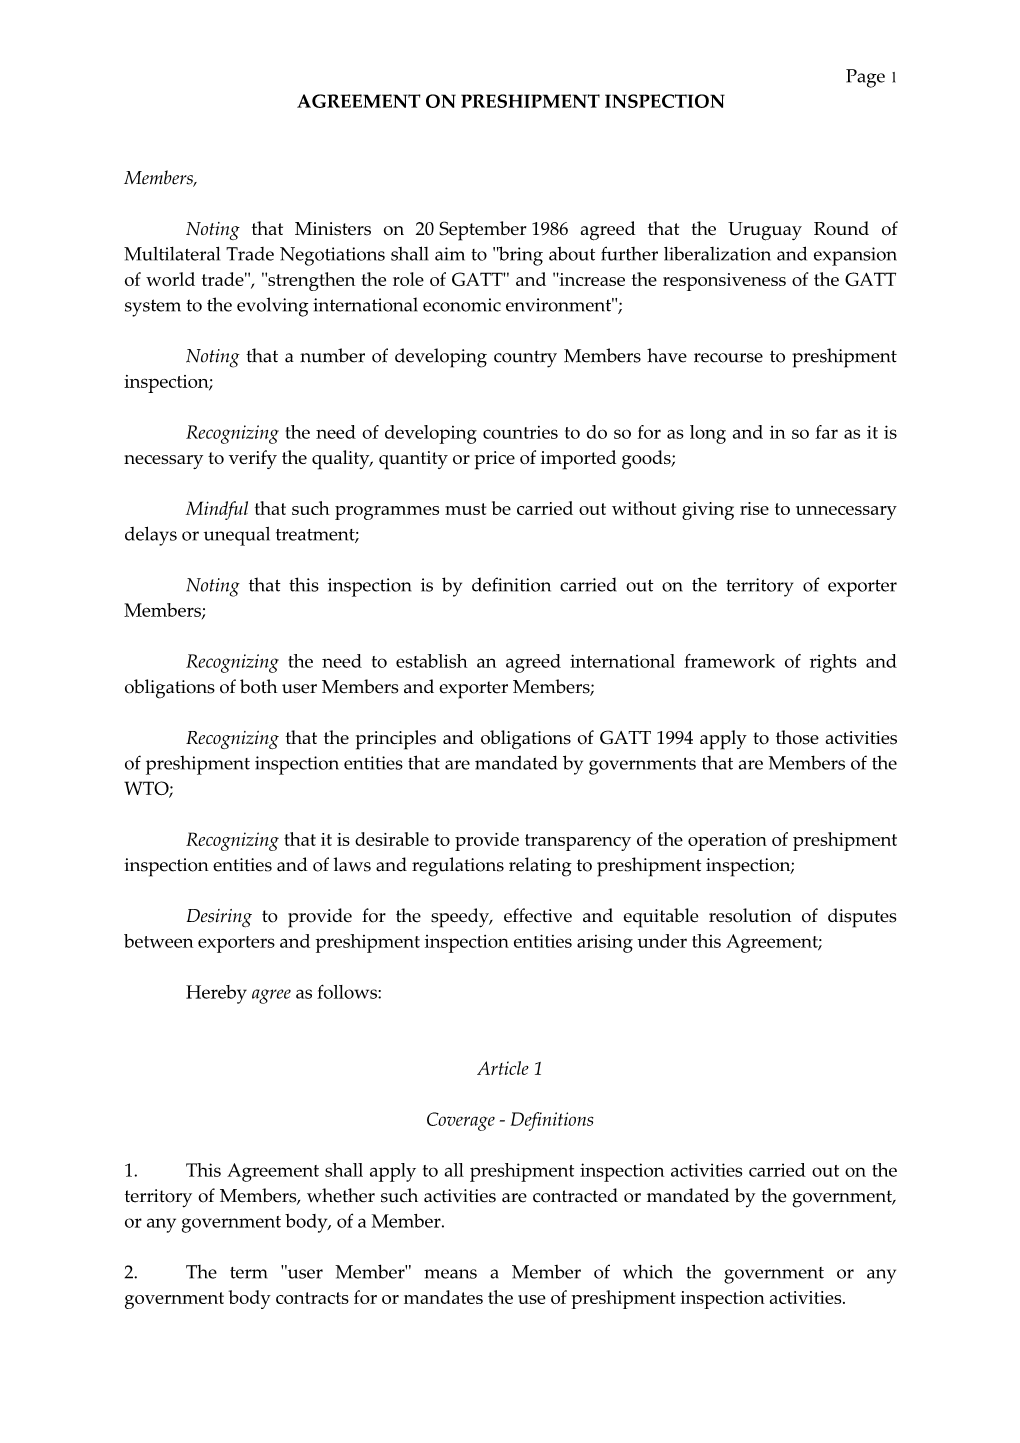 Agreement on Preshipment Inspection